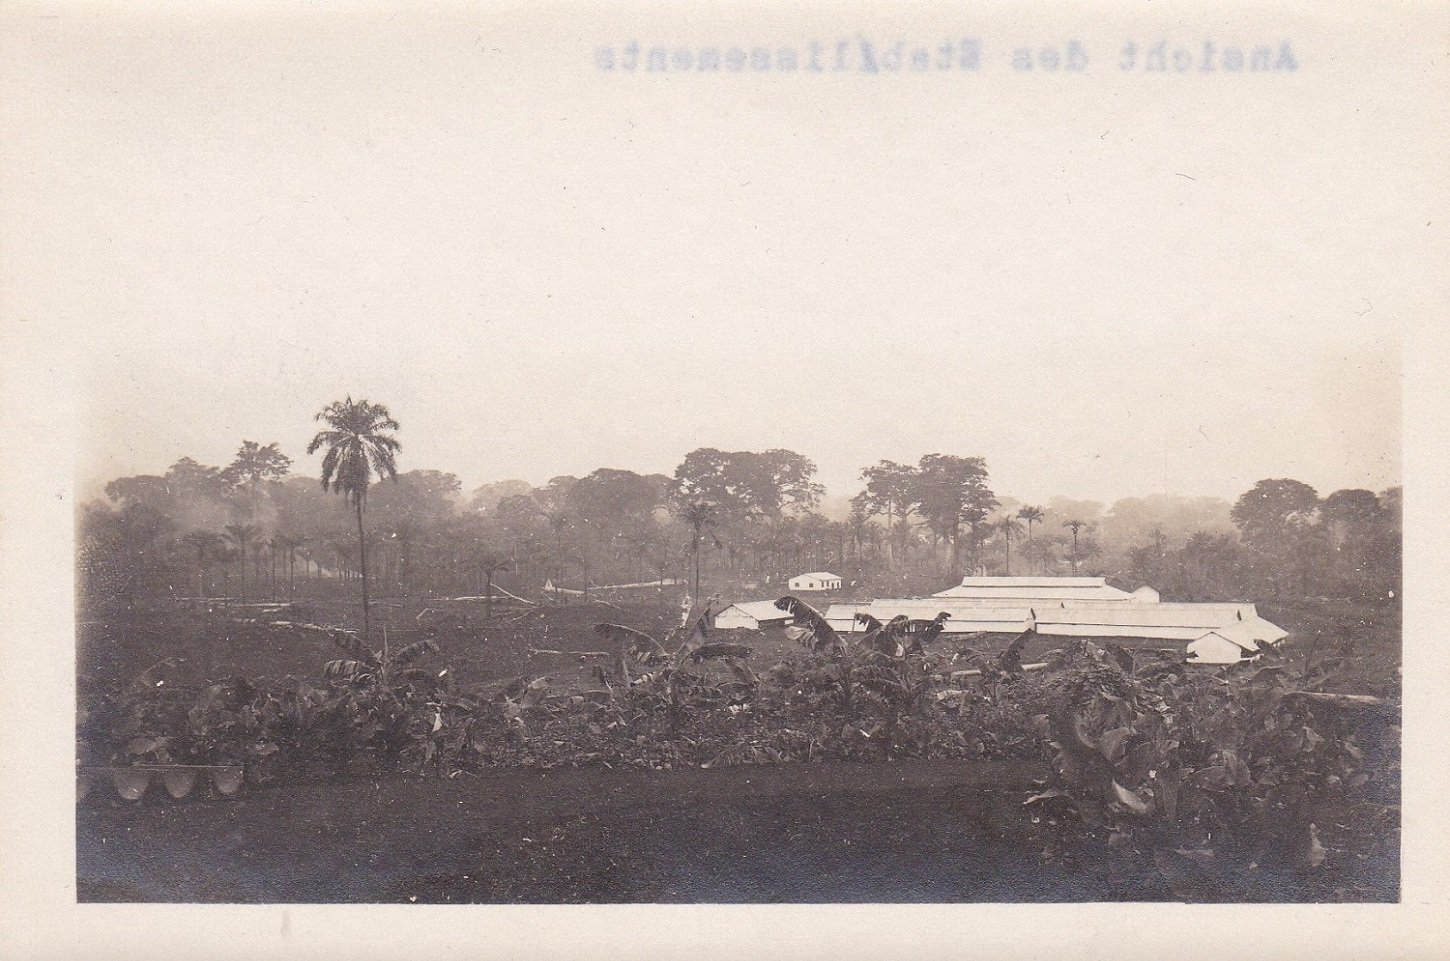   8 Original-Photographien aus der deutschen Kolonialzeit in Kamerun. Historische Photographien mit Ansichten von einer Plantage und Umgebung. 